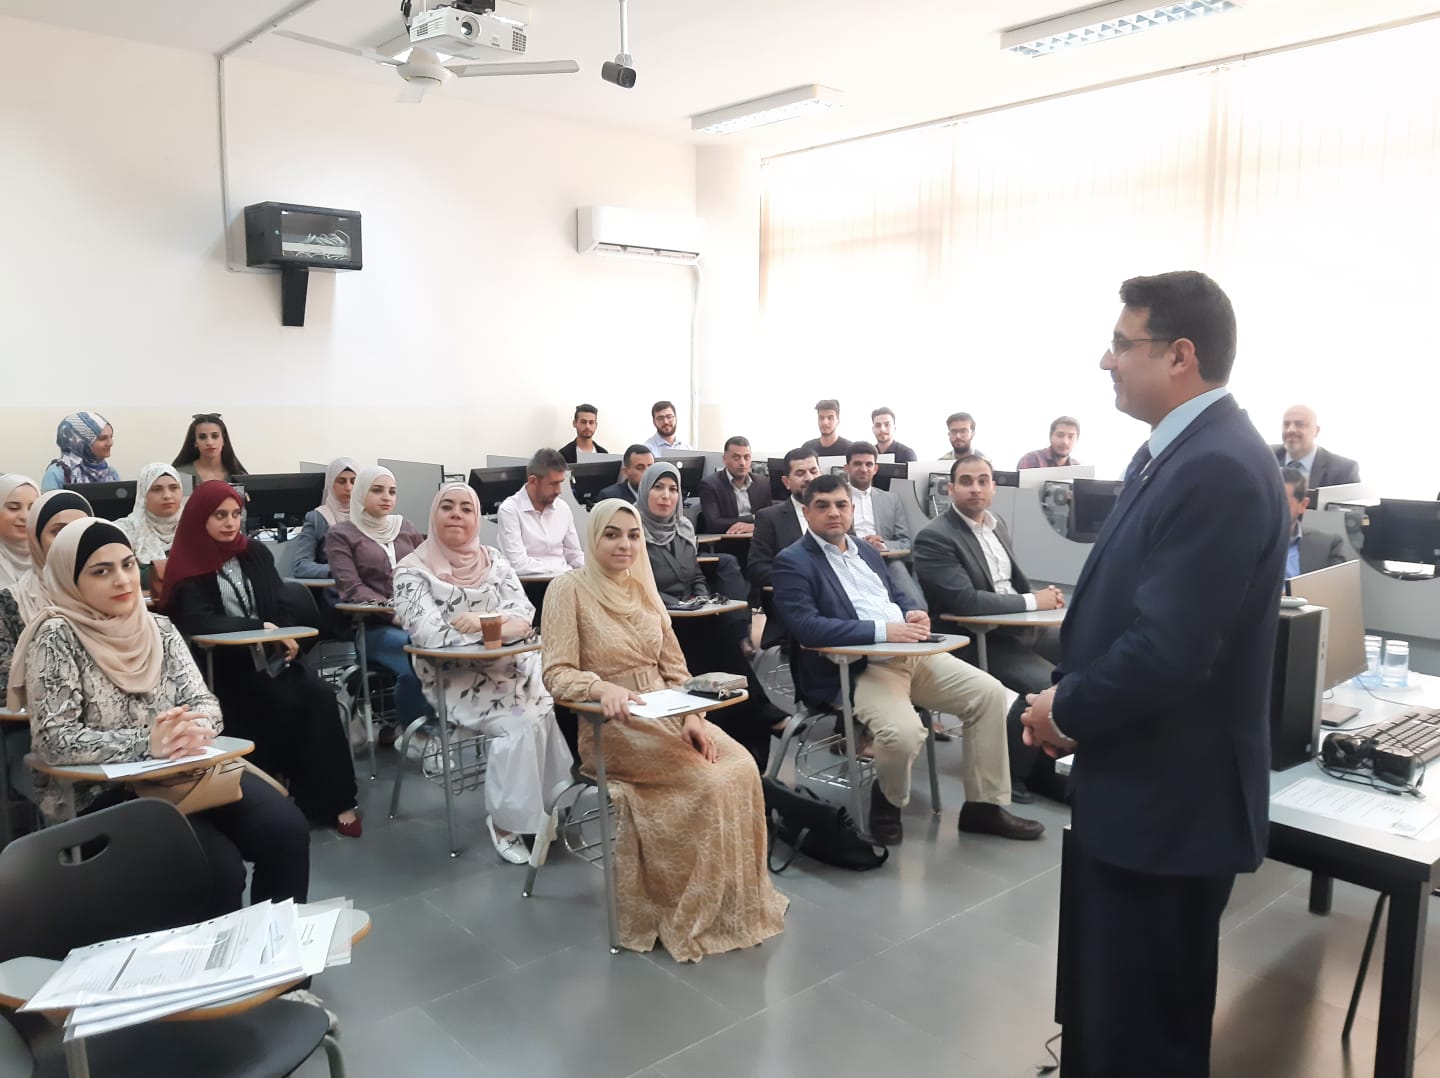 كلية العلوم الحاسوبية بجامعة عمان العربية تنظم يوم خريجي الكلية الأول1